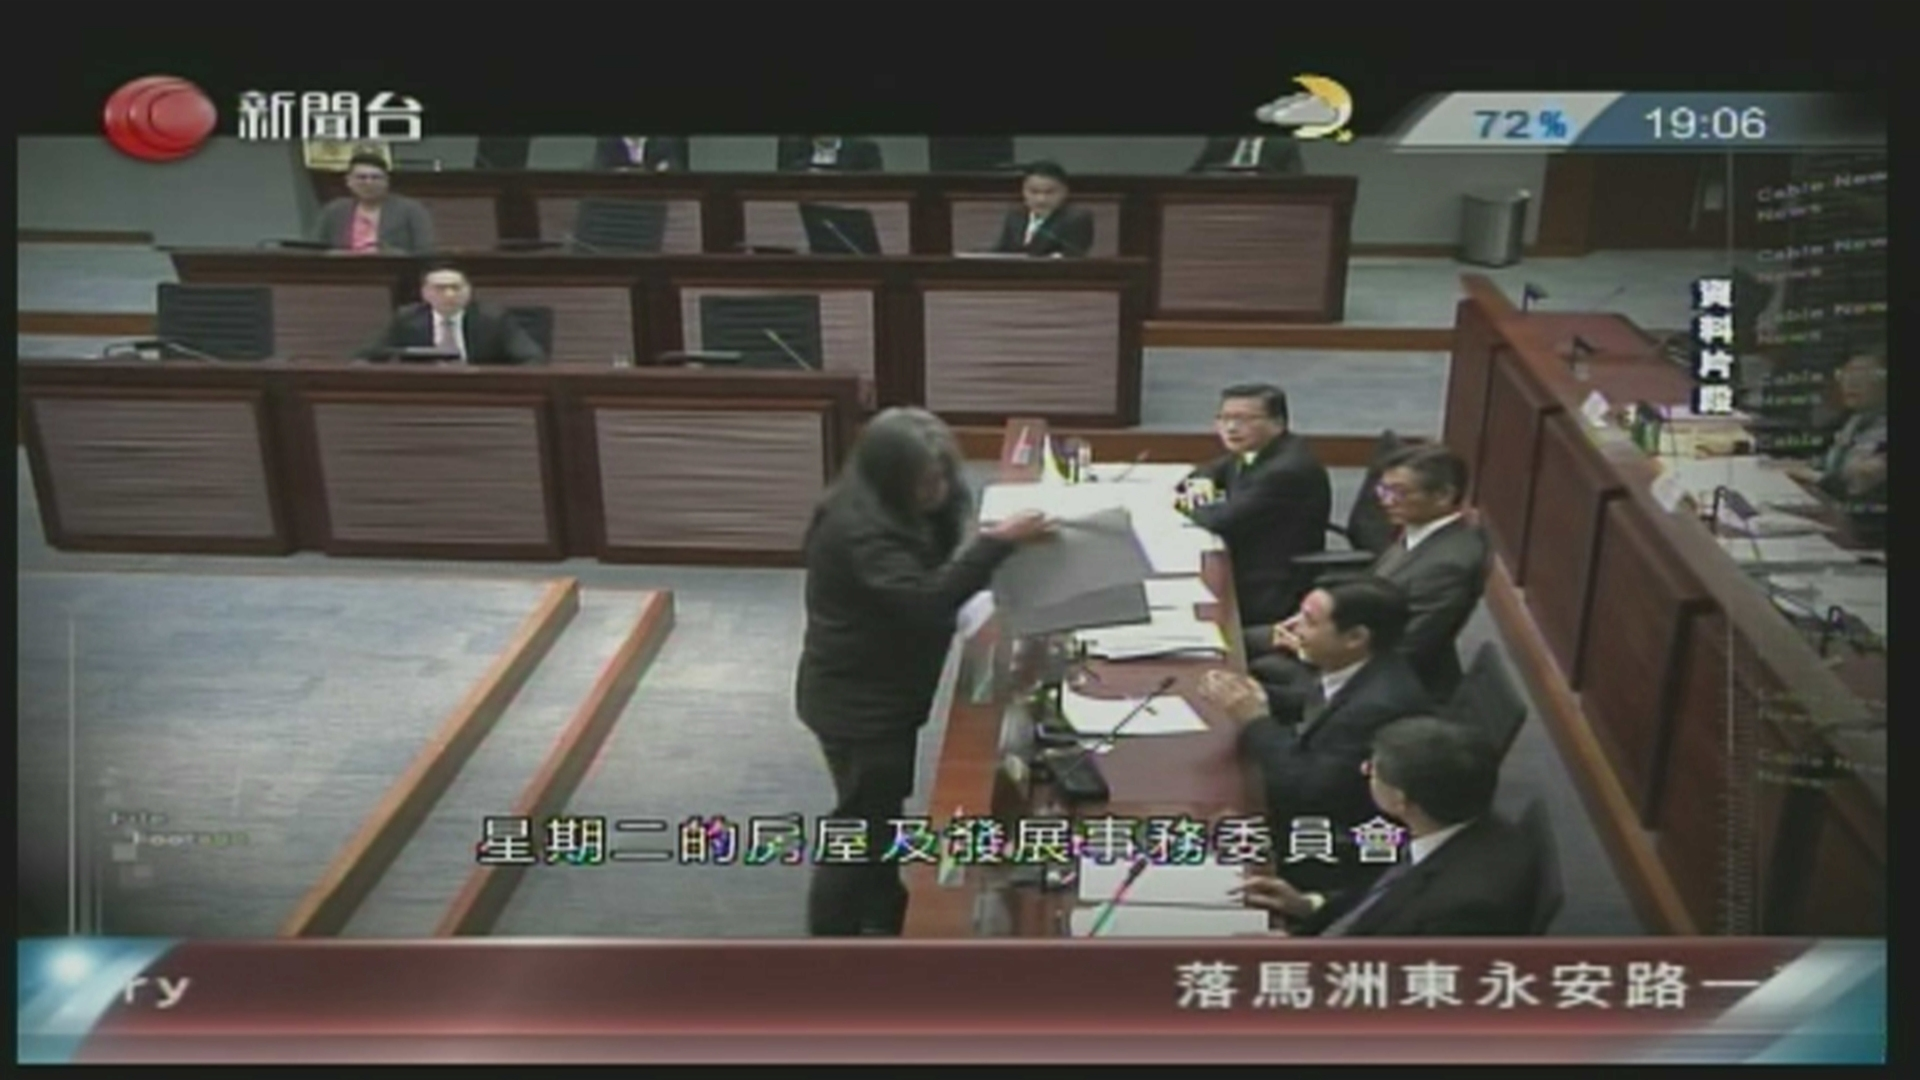 梁國雄在立法會會議上公然搶走馬紹祥放在會議桌上的文件夾]電視截圖^